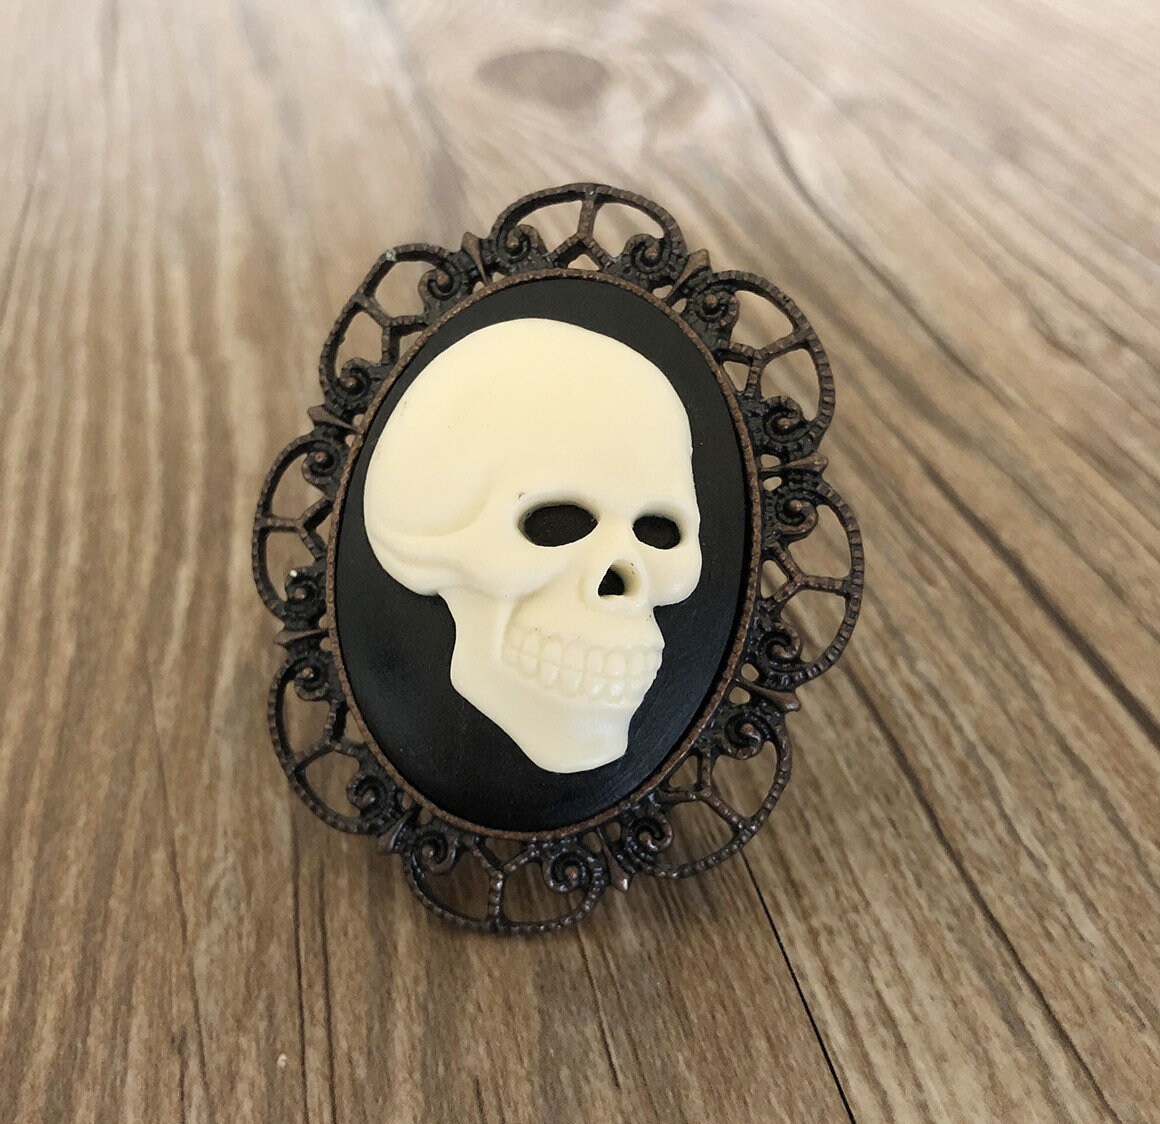 Gothic Skull Knobs Fluorescent Resin Knobs / cabinet Dresser | Etsy